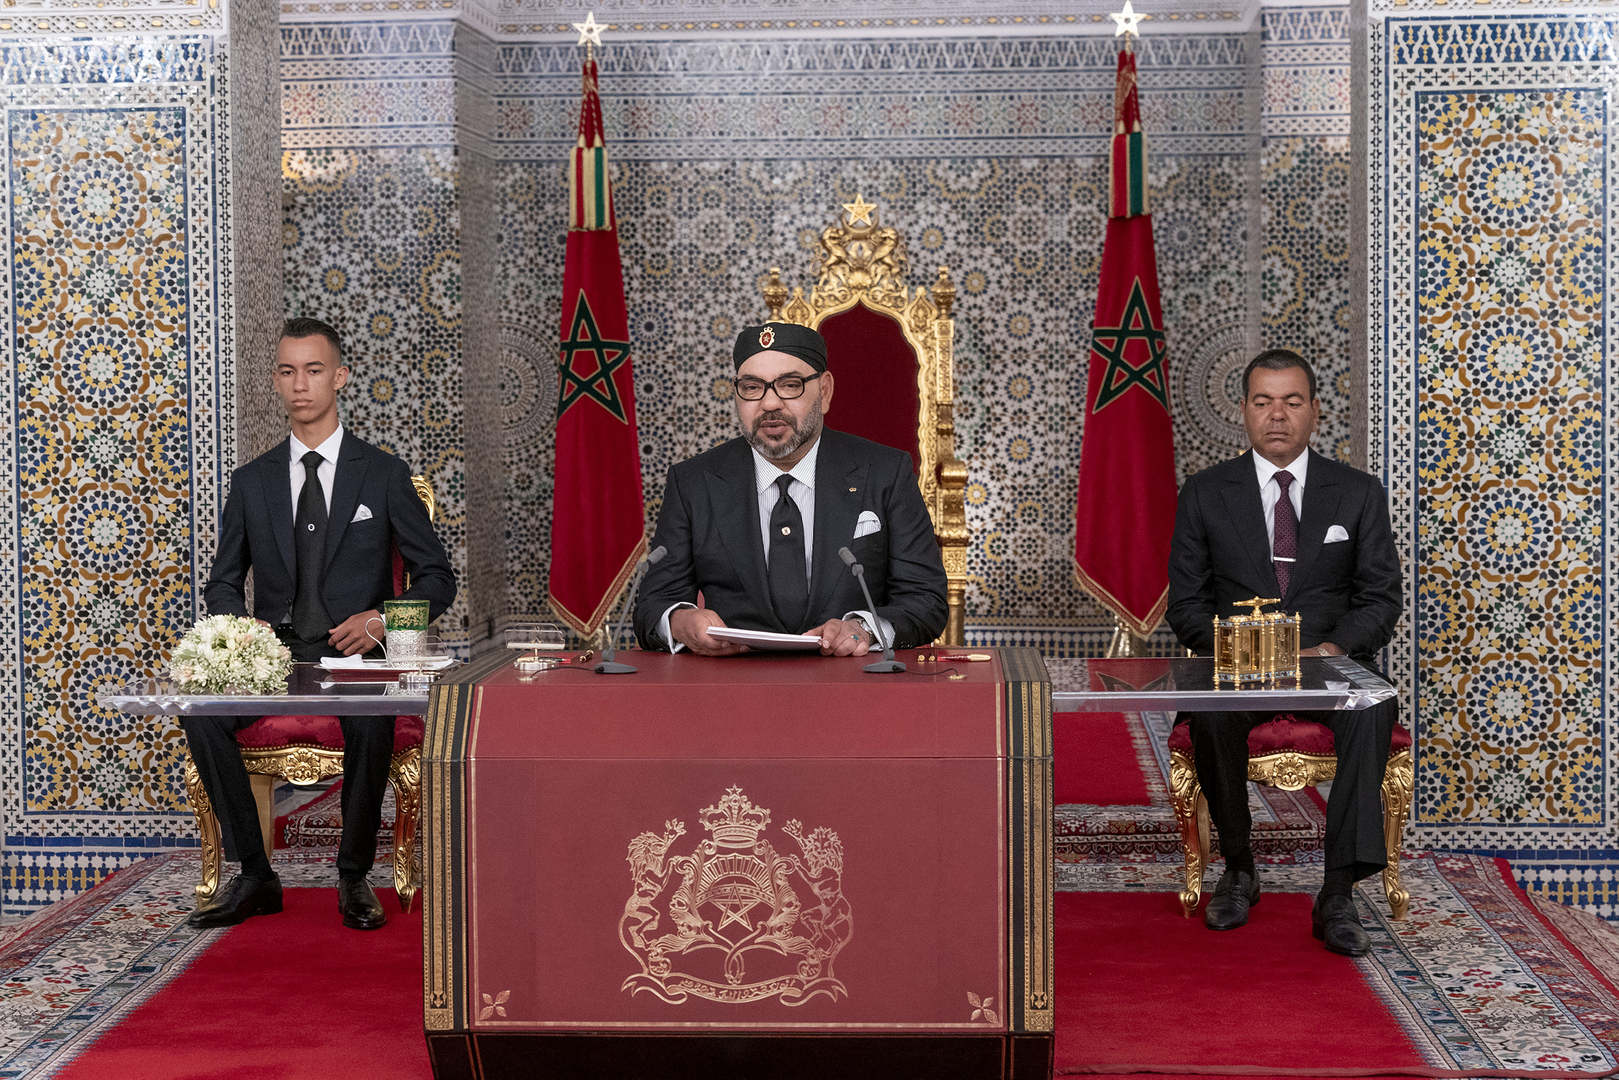 العاهل المغربي يأمر بإرسال مساعدات طبية إلى 15 دولة إفريقية